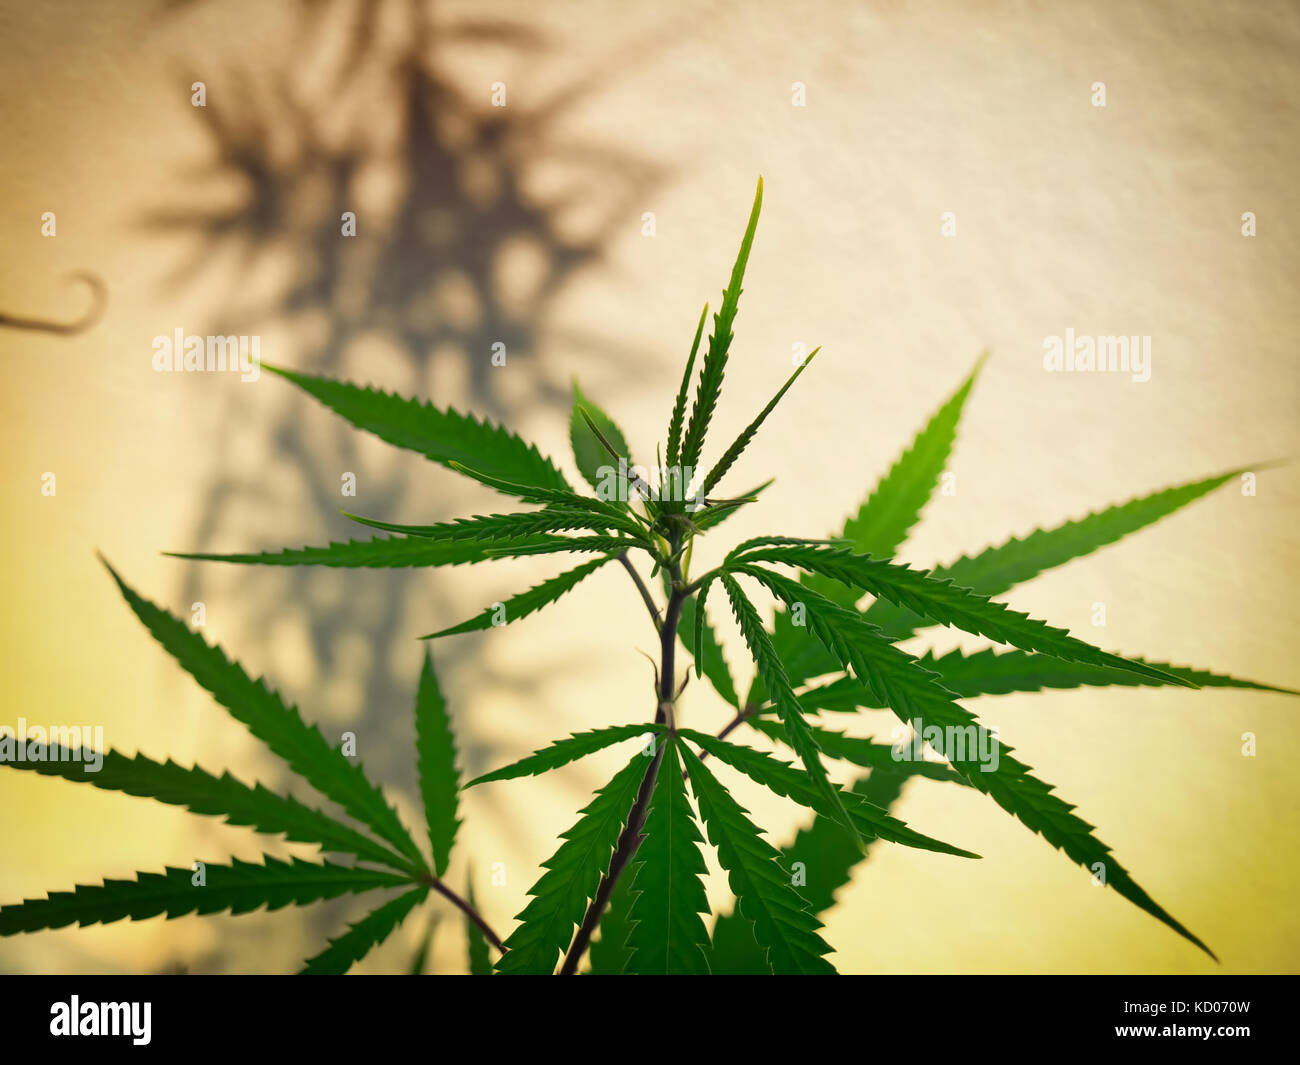 Vue artistique sur un plant de cannabis ou chanvre. Banque D'Images